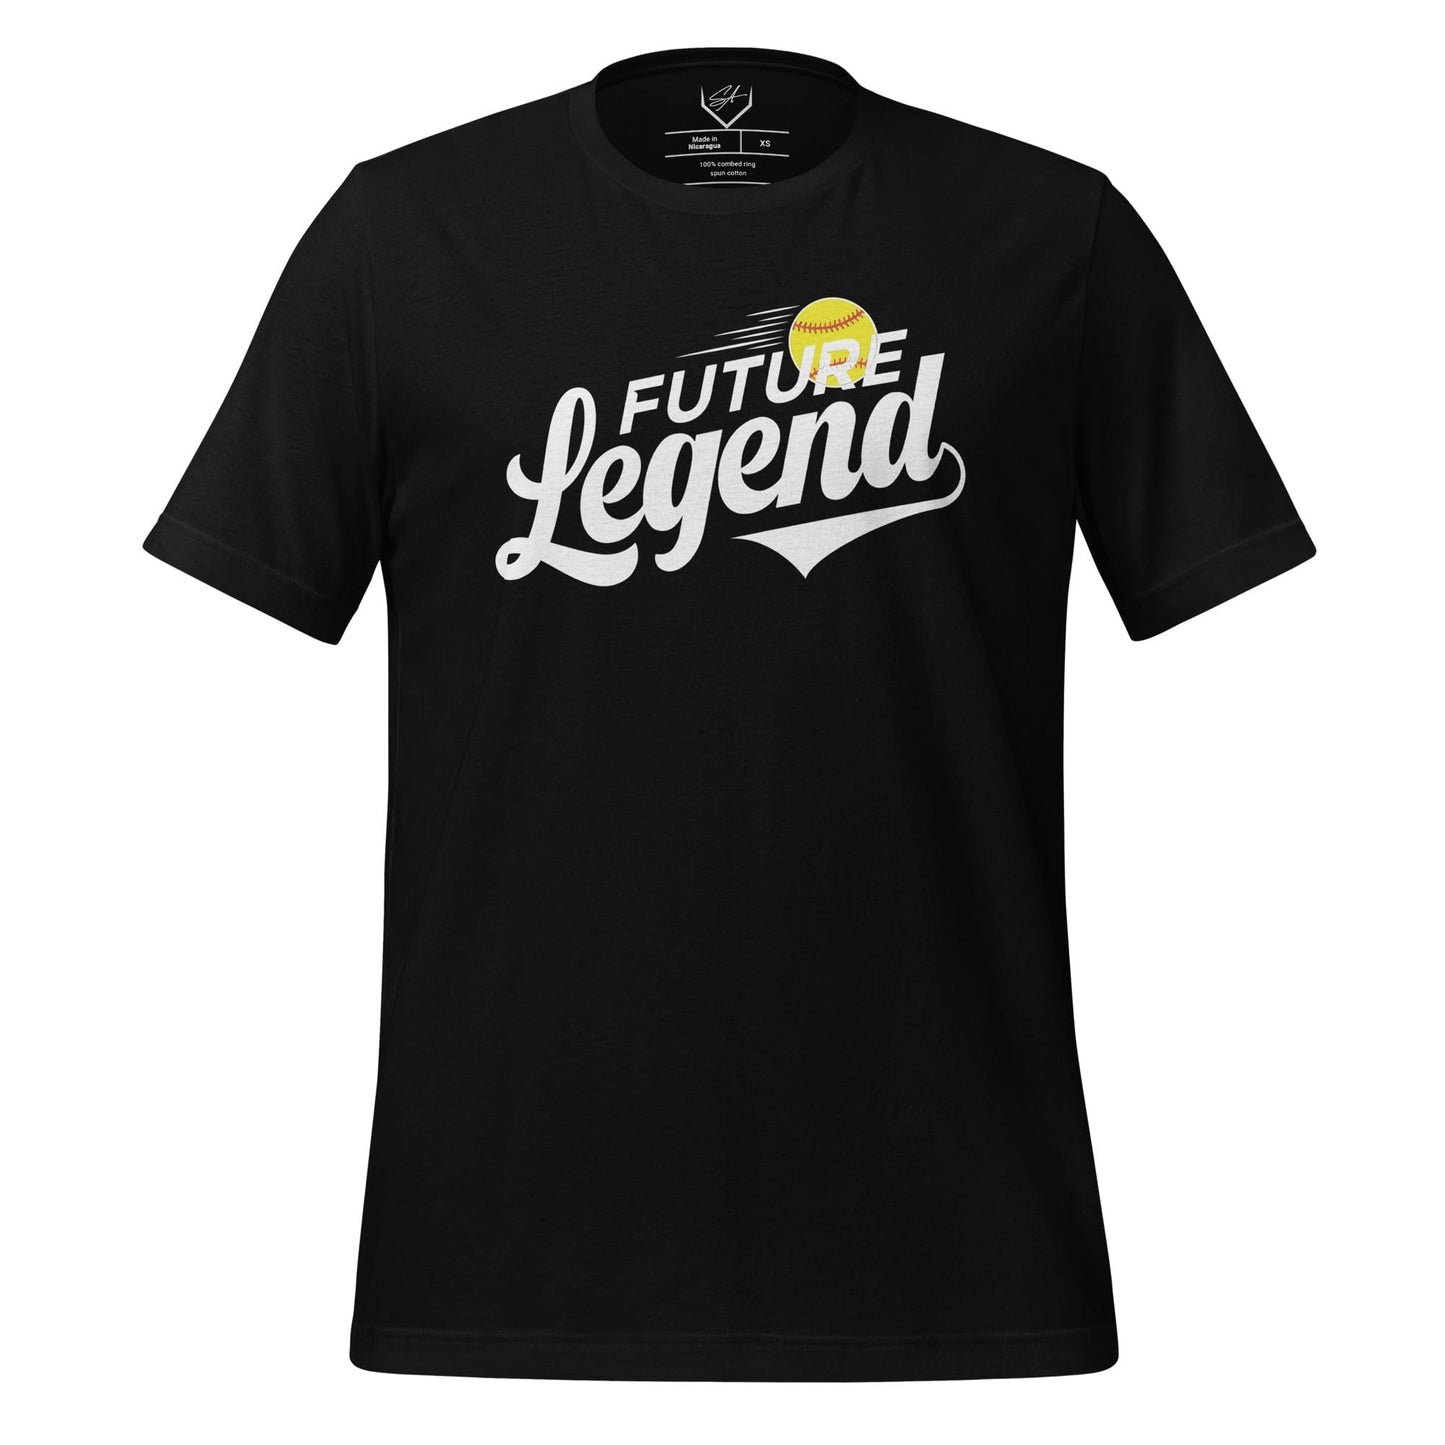 Future Legend Softball - Adult Tee